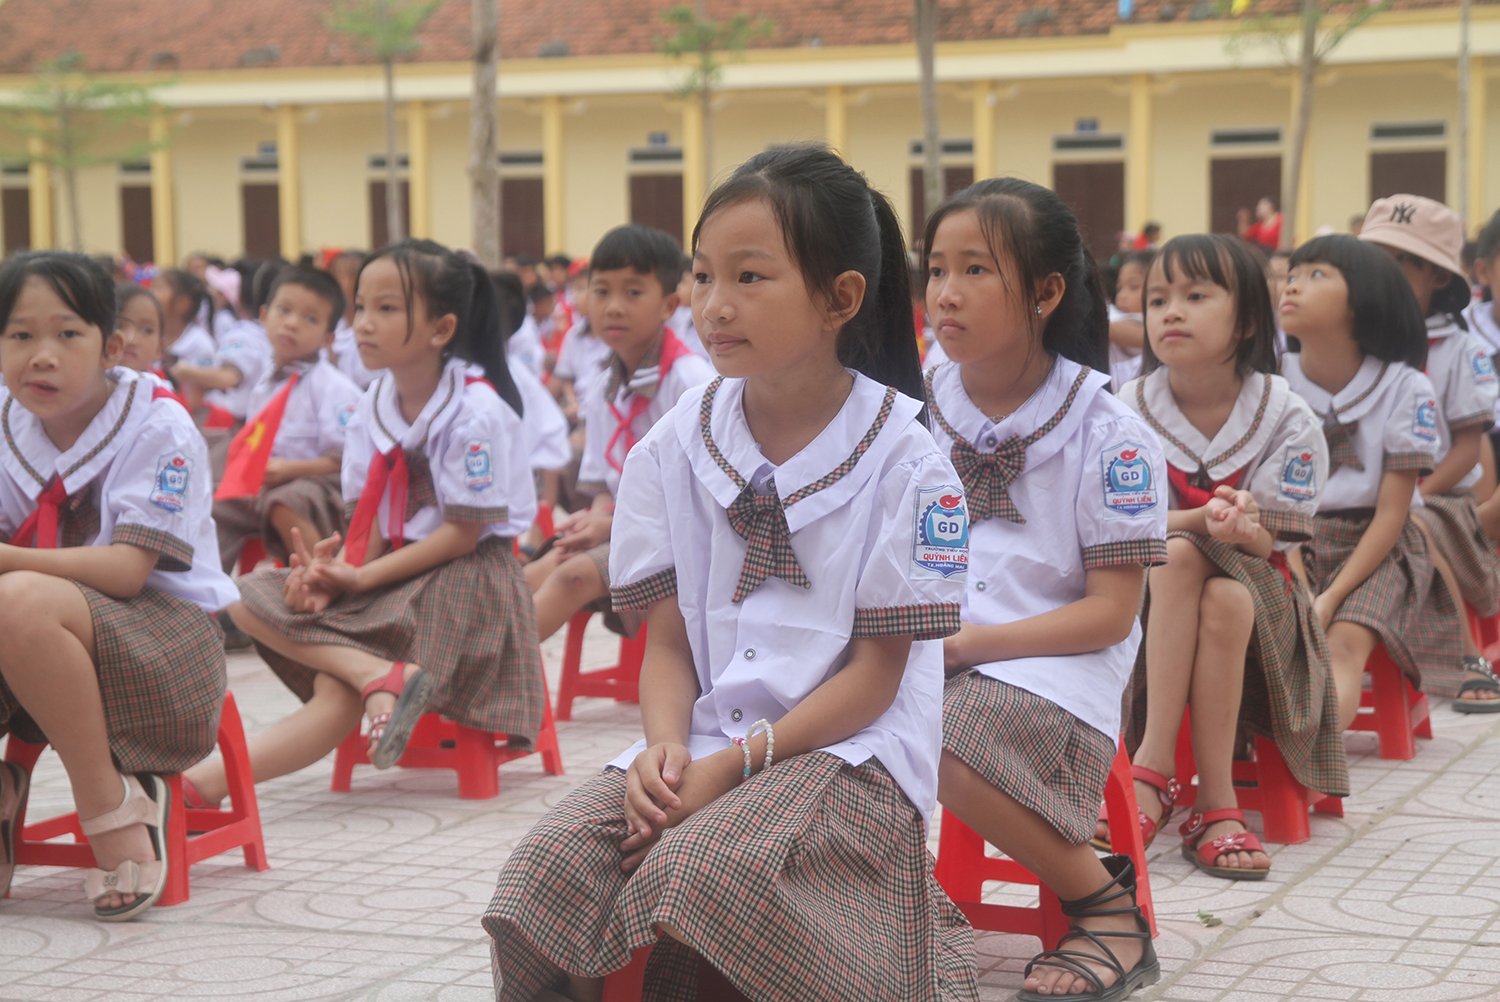 Trường tiểu học Quỳnh Liên đạt được nhiều thành tích cao trong những năm qua. Ảnh: Việt Khánh.